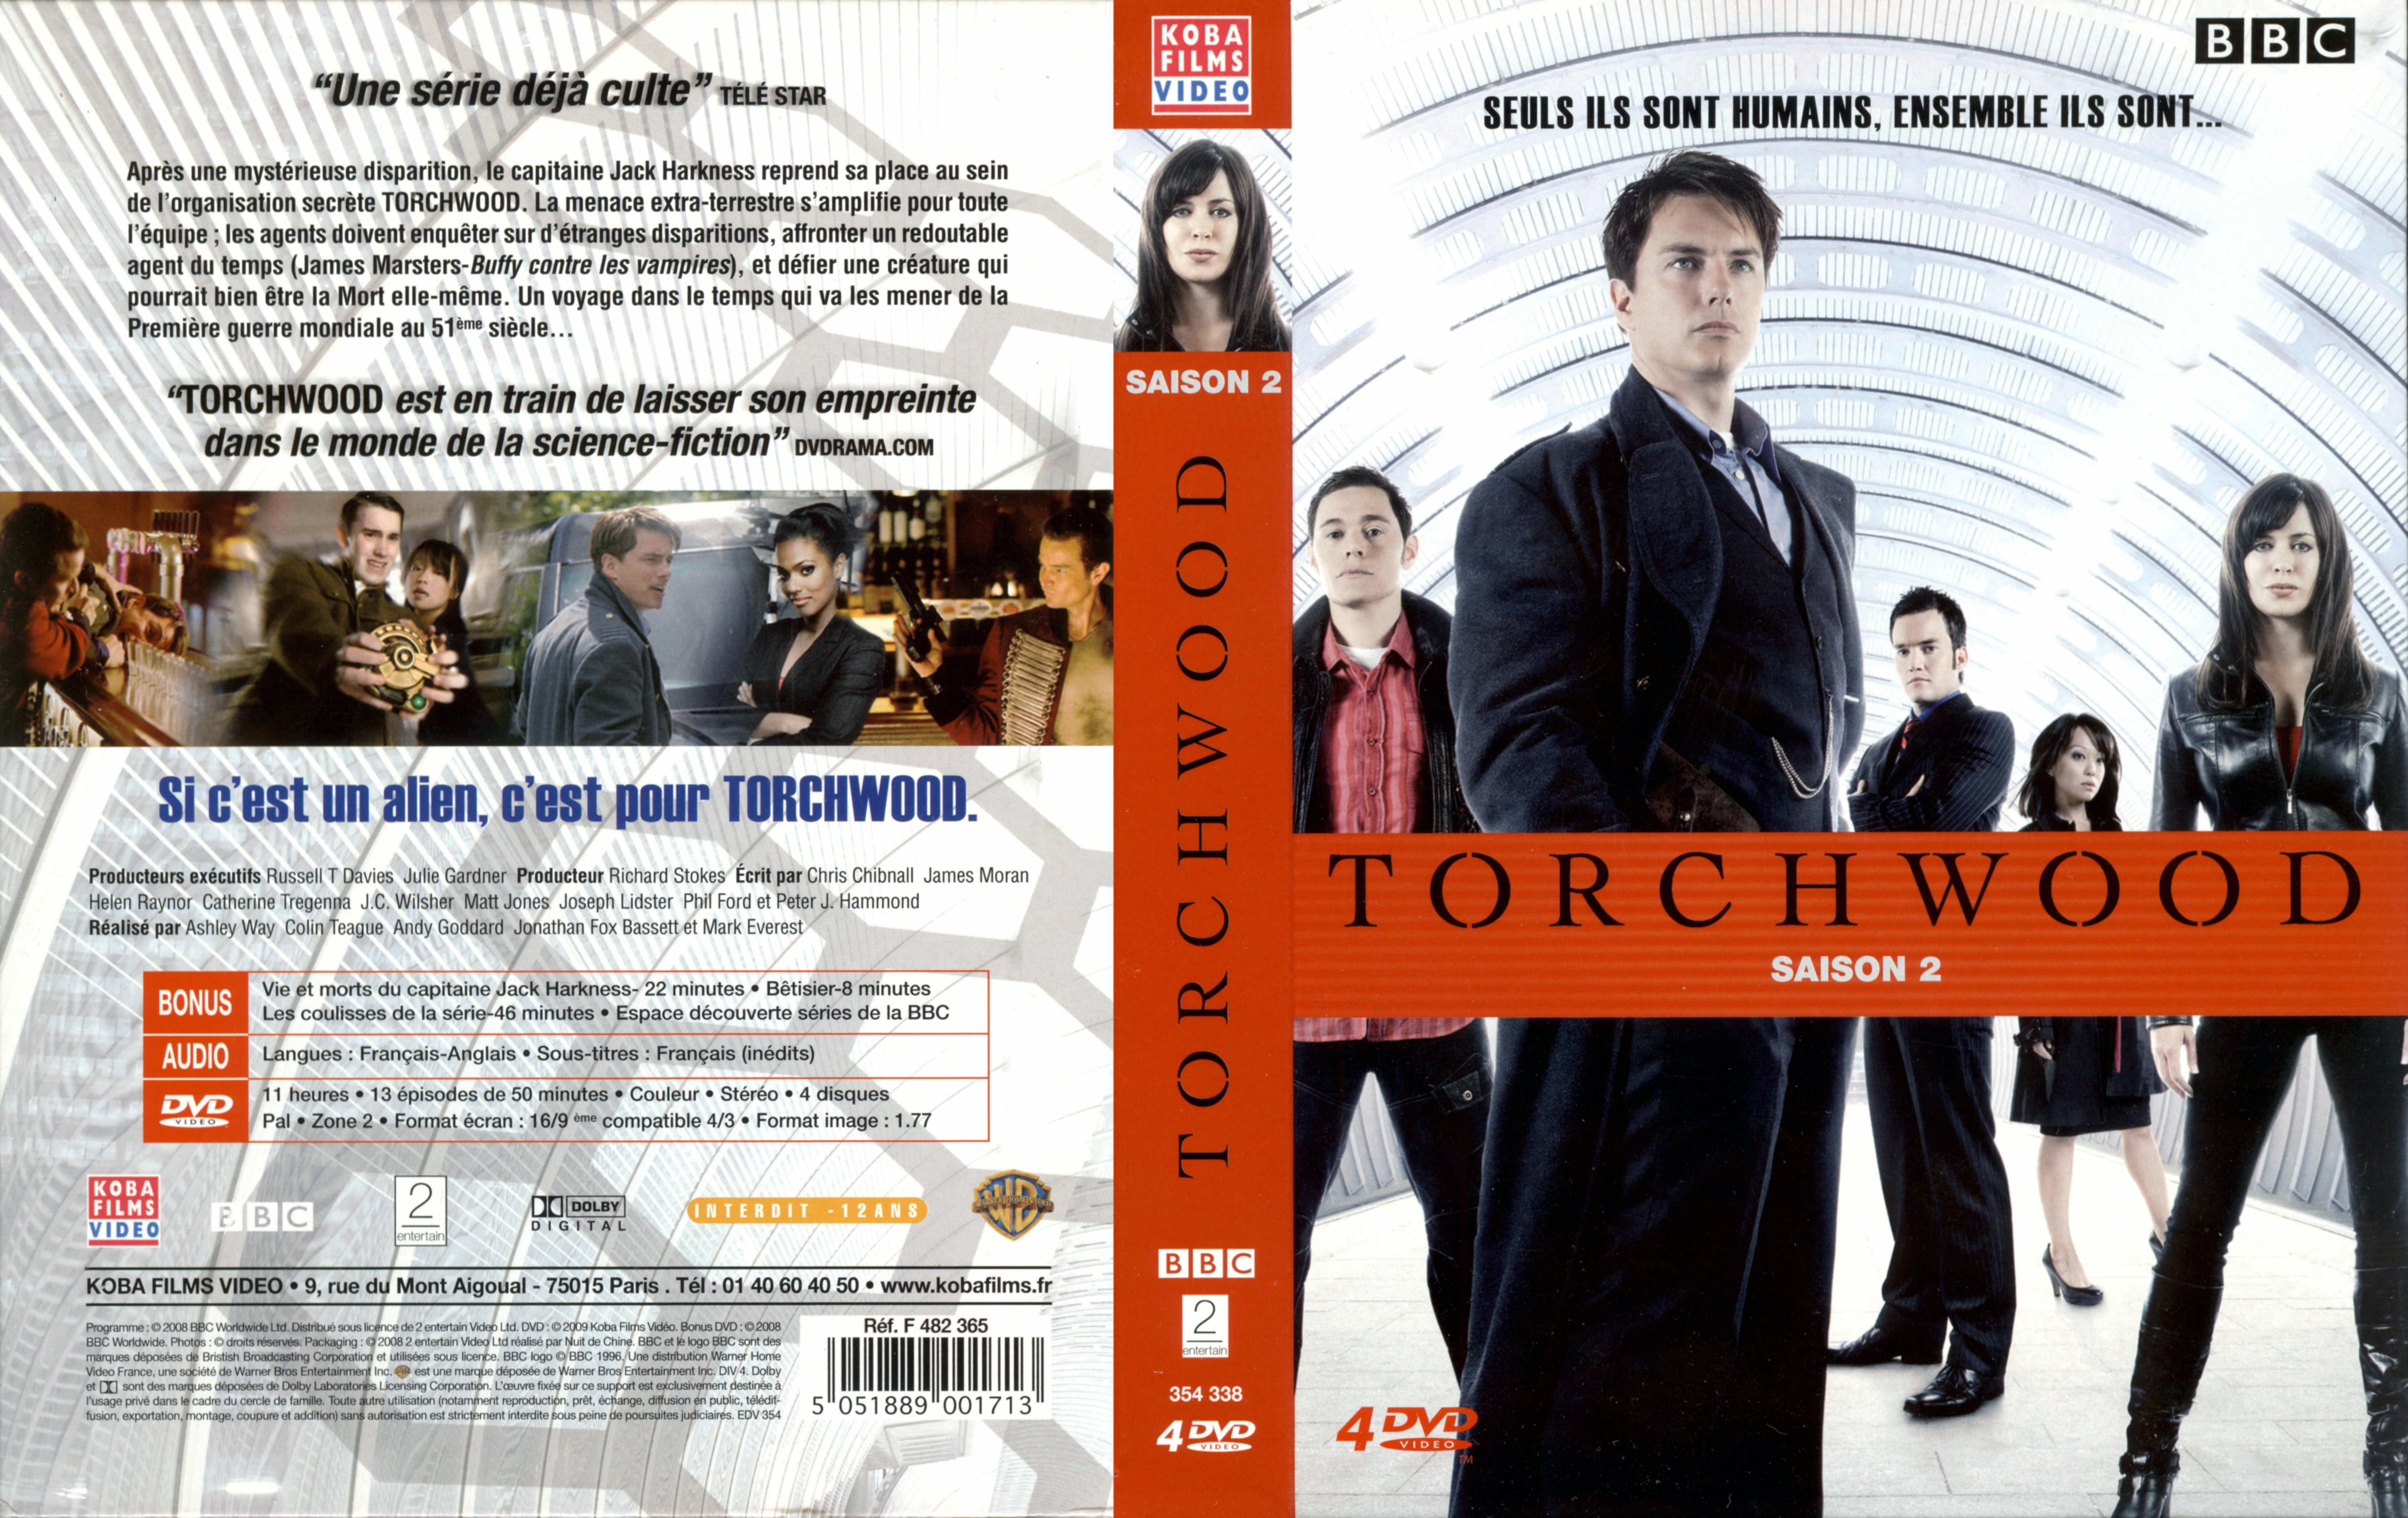 Jaquette DVD Torchwood Saison 2 COFFRET